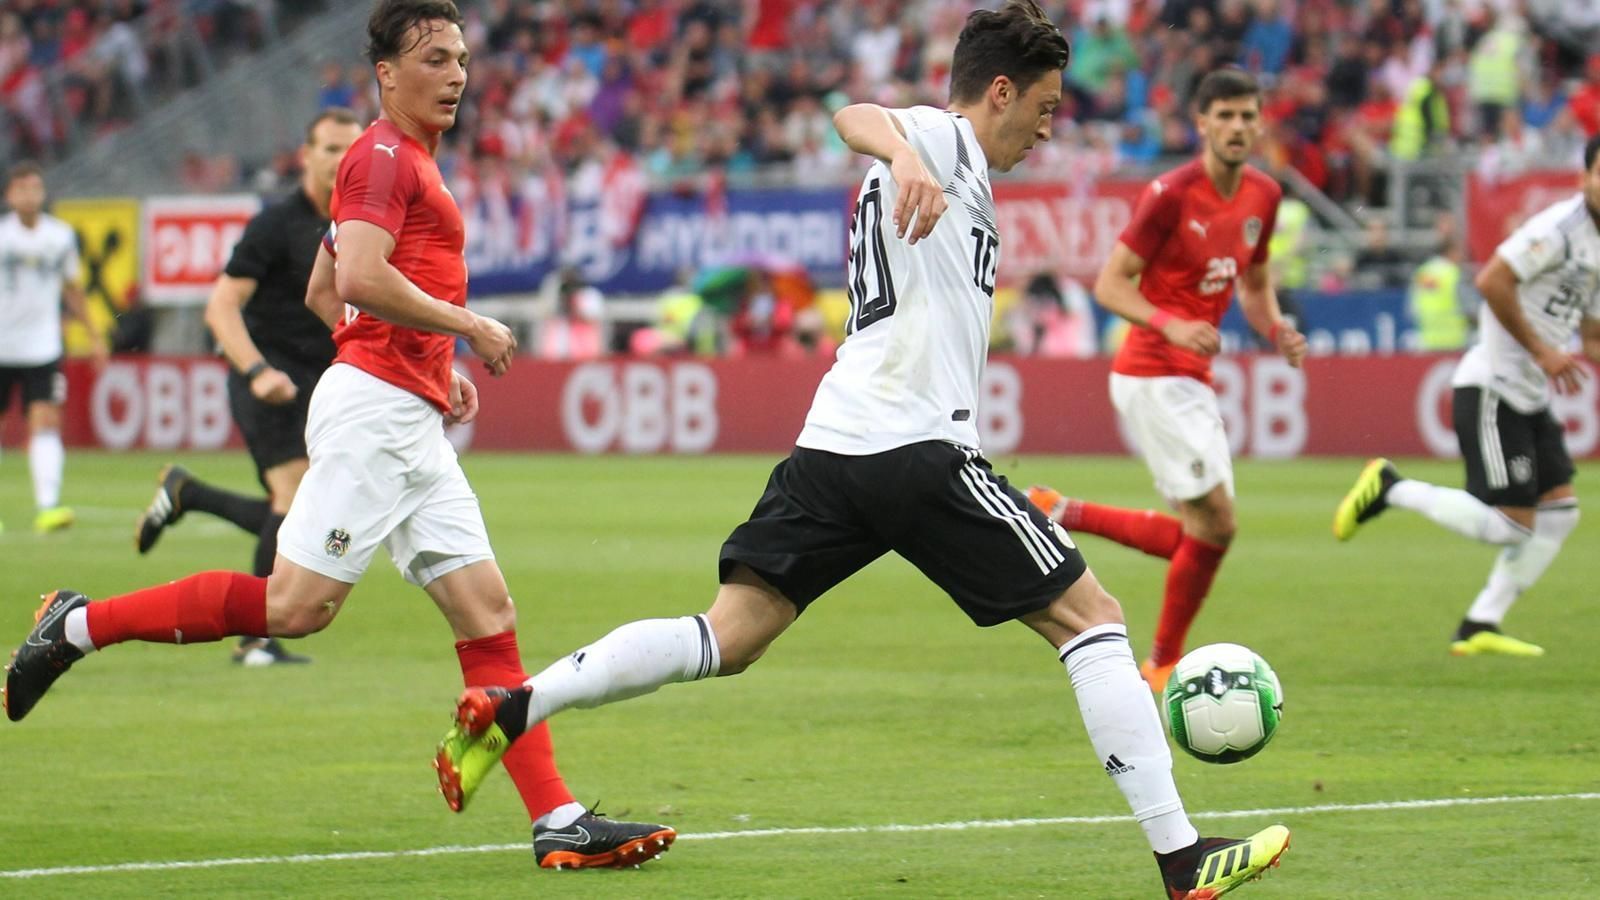 
                <strong>2. Juni: Länderspiel gegen Österreich</strong><br>
                Beim Länderspiel in Klagenfurt gegen Österreich (1:2) sorgt Özil für die Führung, allerdings werden beide Spieler ausgepfiffen. Thomas Müller verteidigt das Duo, beide seien "wichtiger Teil unseres Teams. Für uns ist das Thema abgehakt".
              